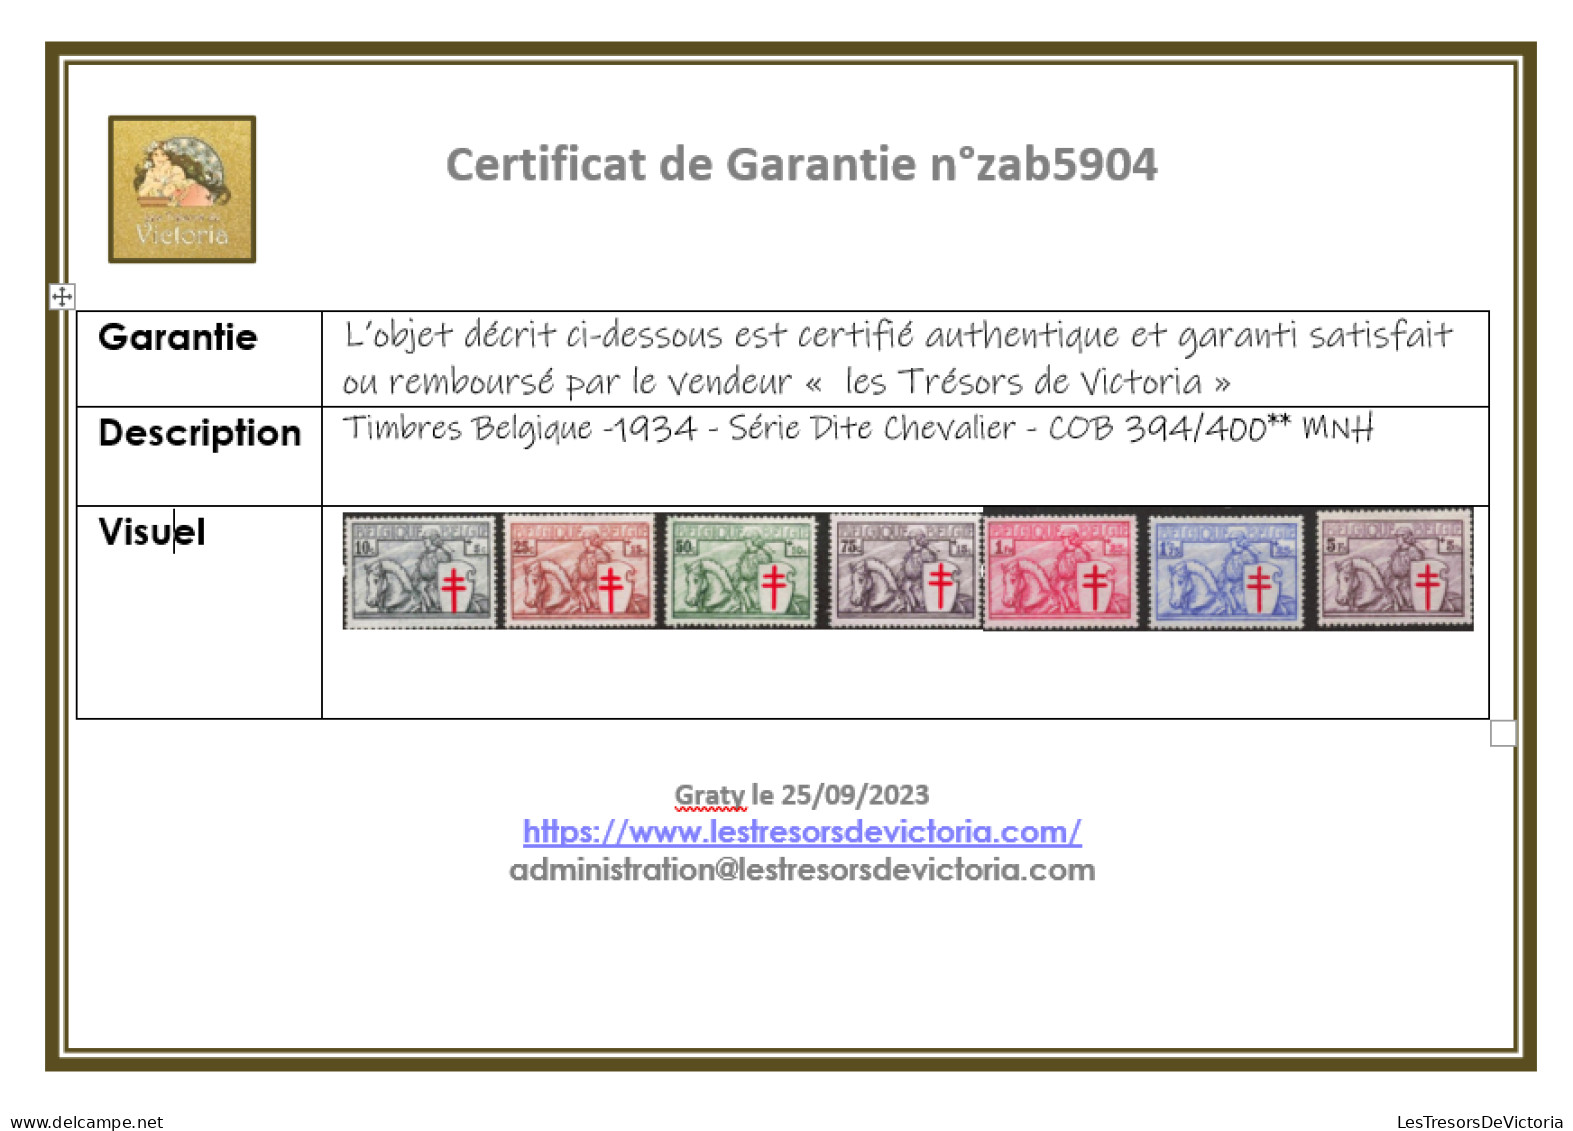 Timbres Belgique -1934 - Série Dite Chevalier - COB 394/400** MNH - Cote 625 - Unused Stamps